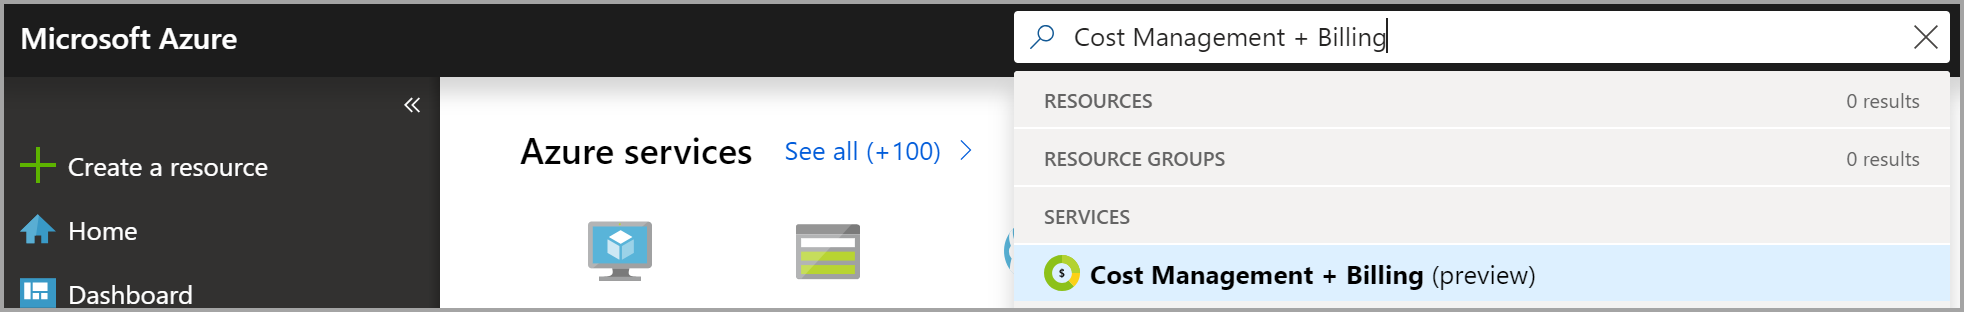 Capture d’écran montrant la recherche sur le portail Azure de « cost management + billing » pour demander la propriété de facturation.